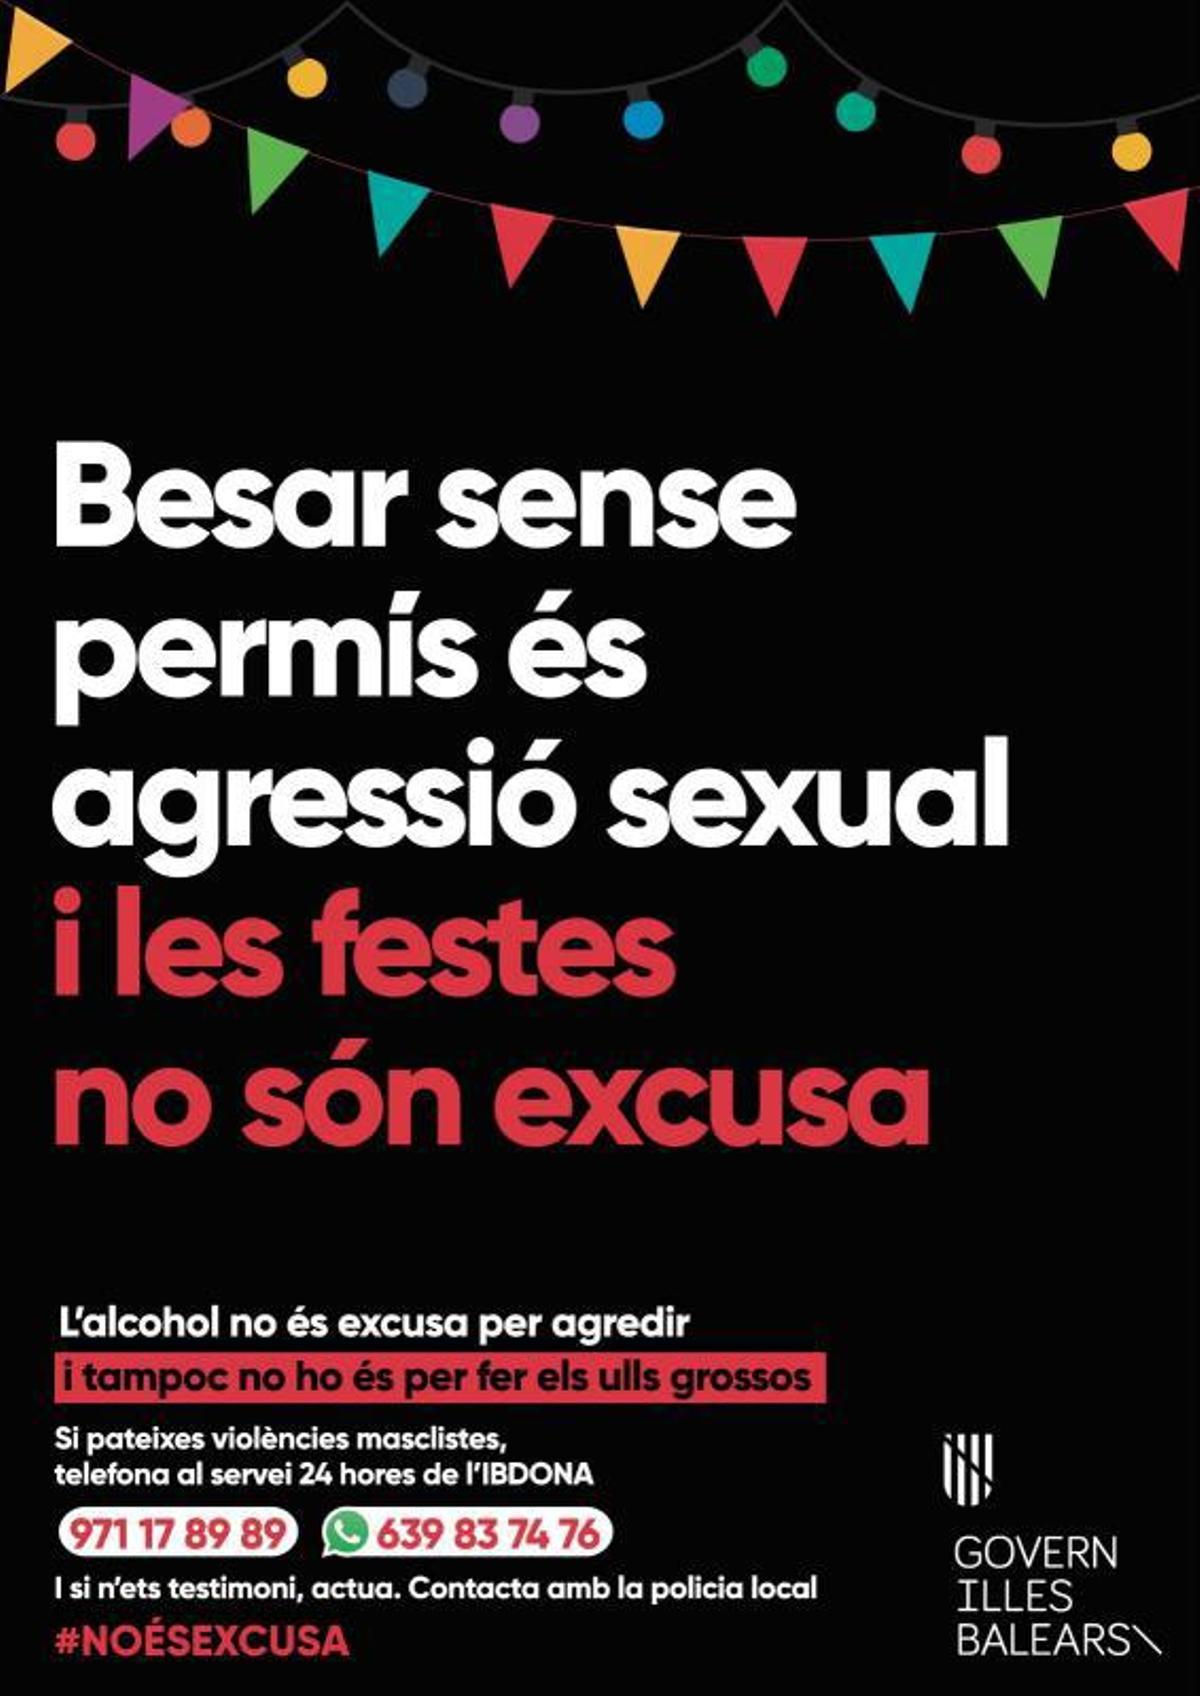 Campaña del Govern para prevenir agresiones sexuales en fiestas populares